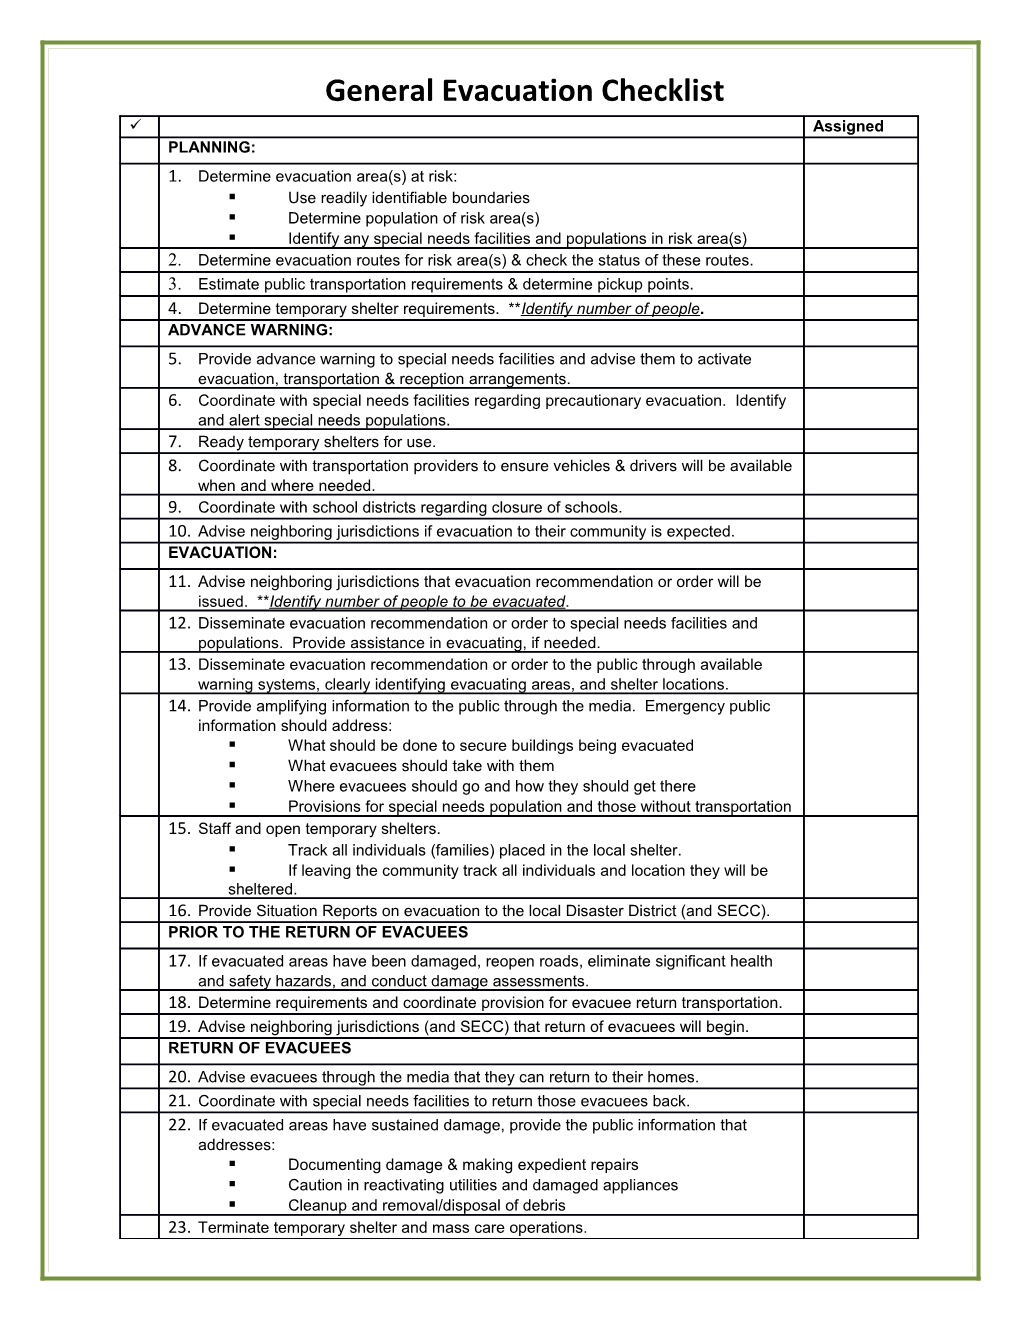 General Evacuation Checklist